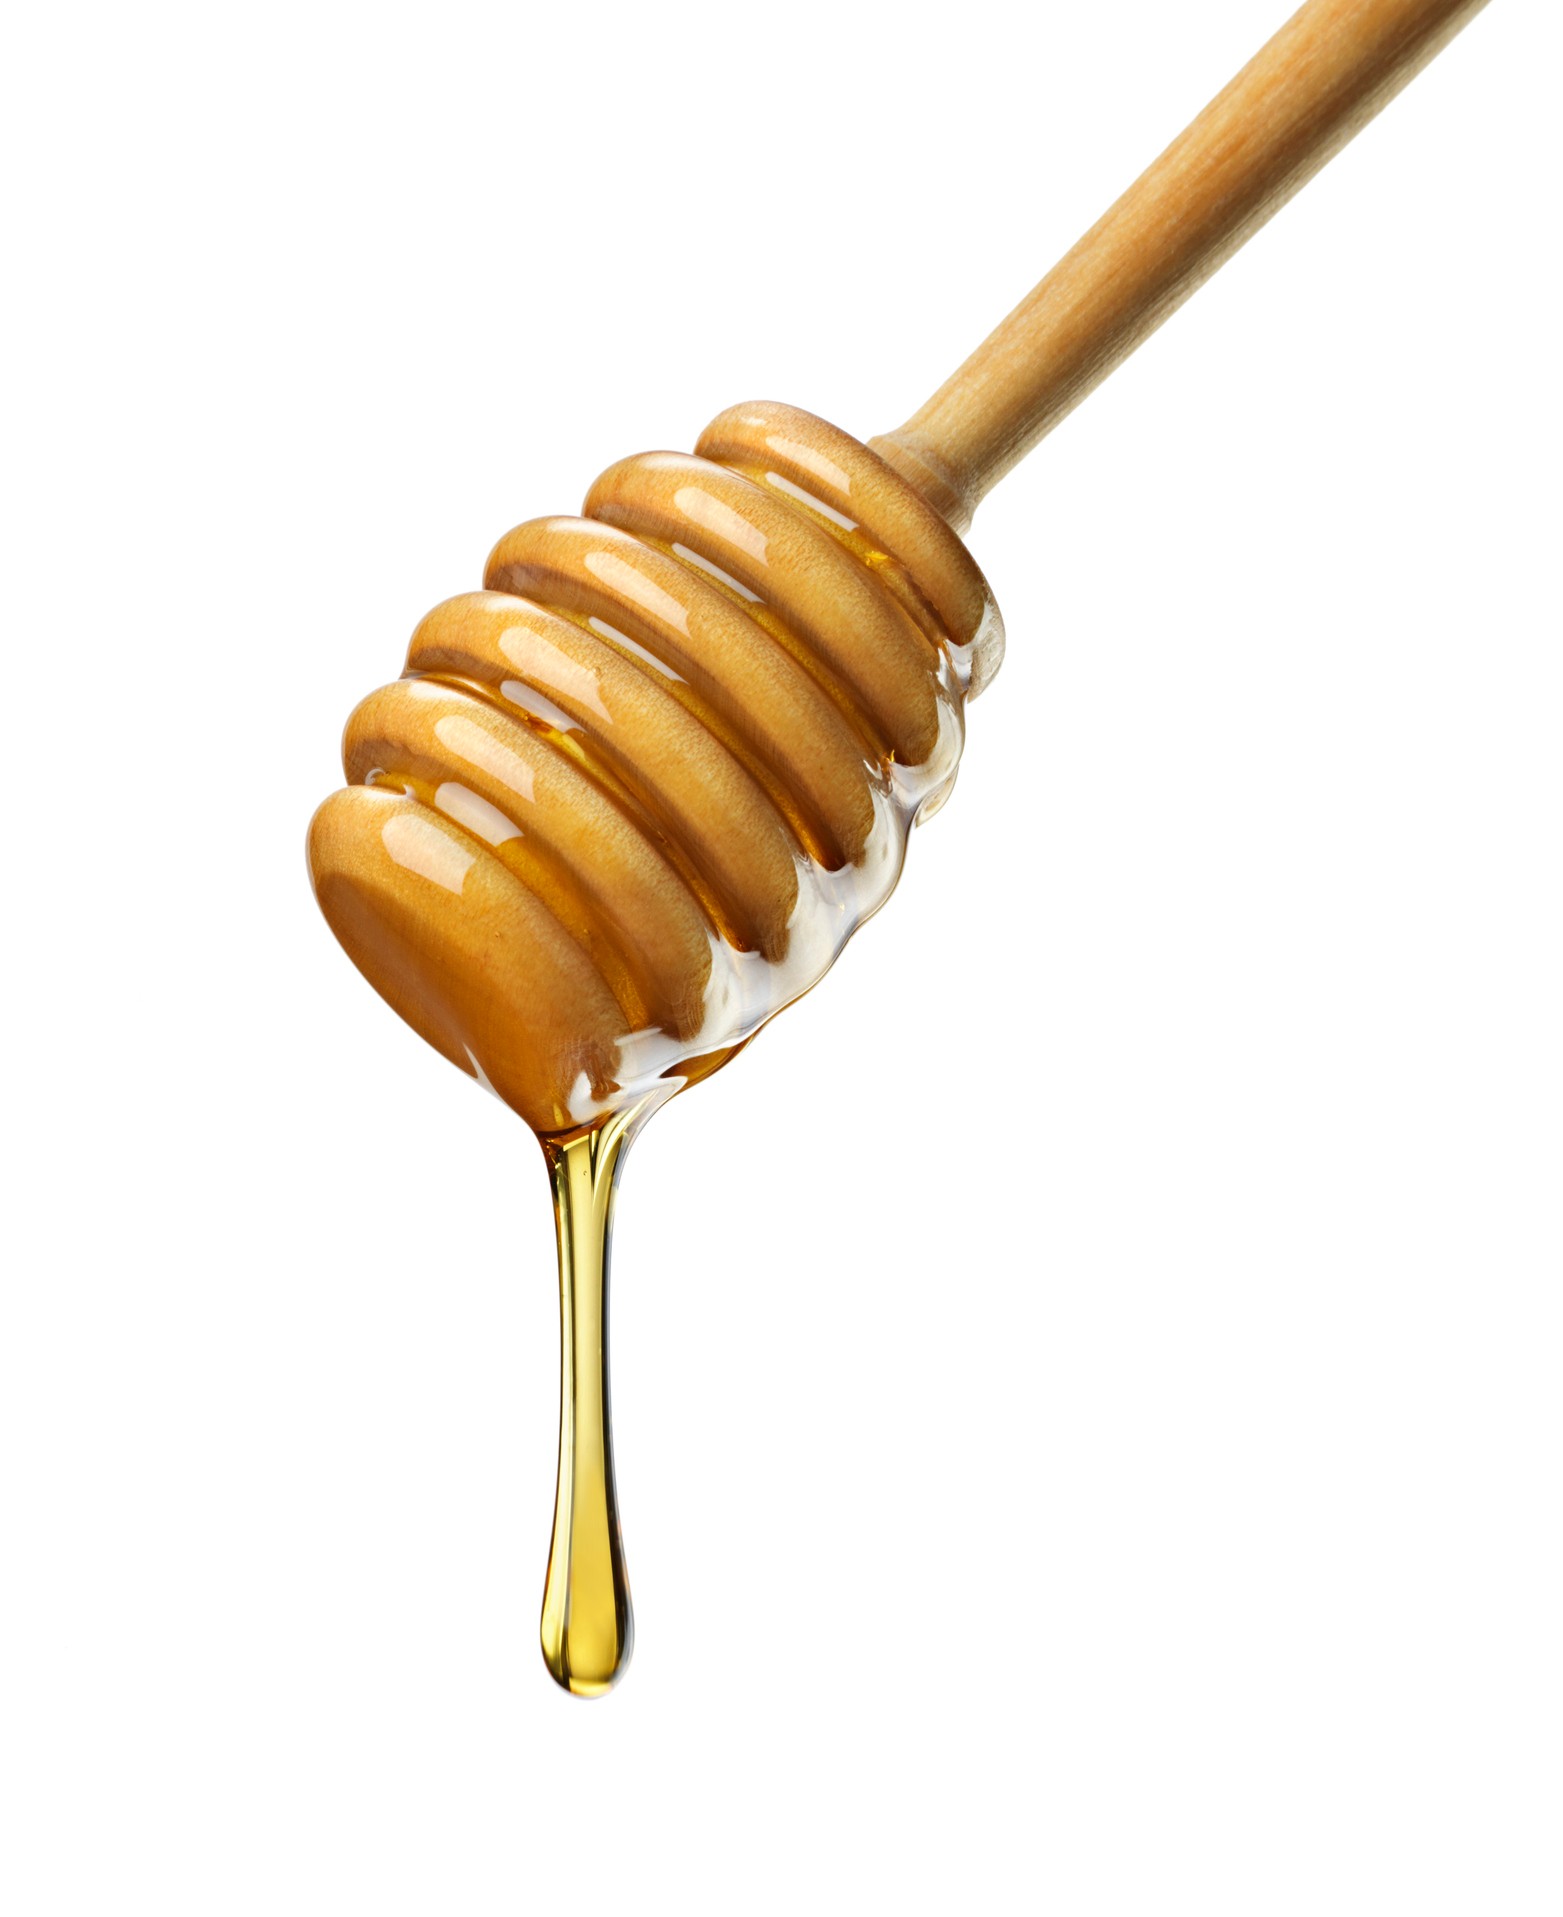 1563px x 877px - Honey for Men' Secretly Contains Viagra, FDA Warns